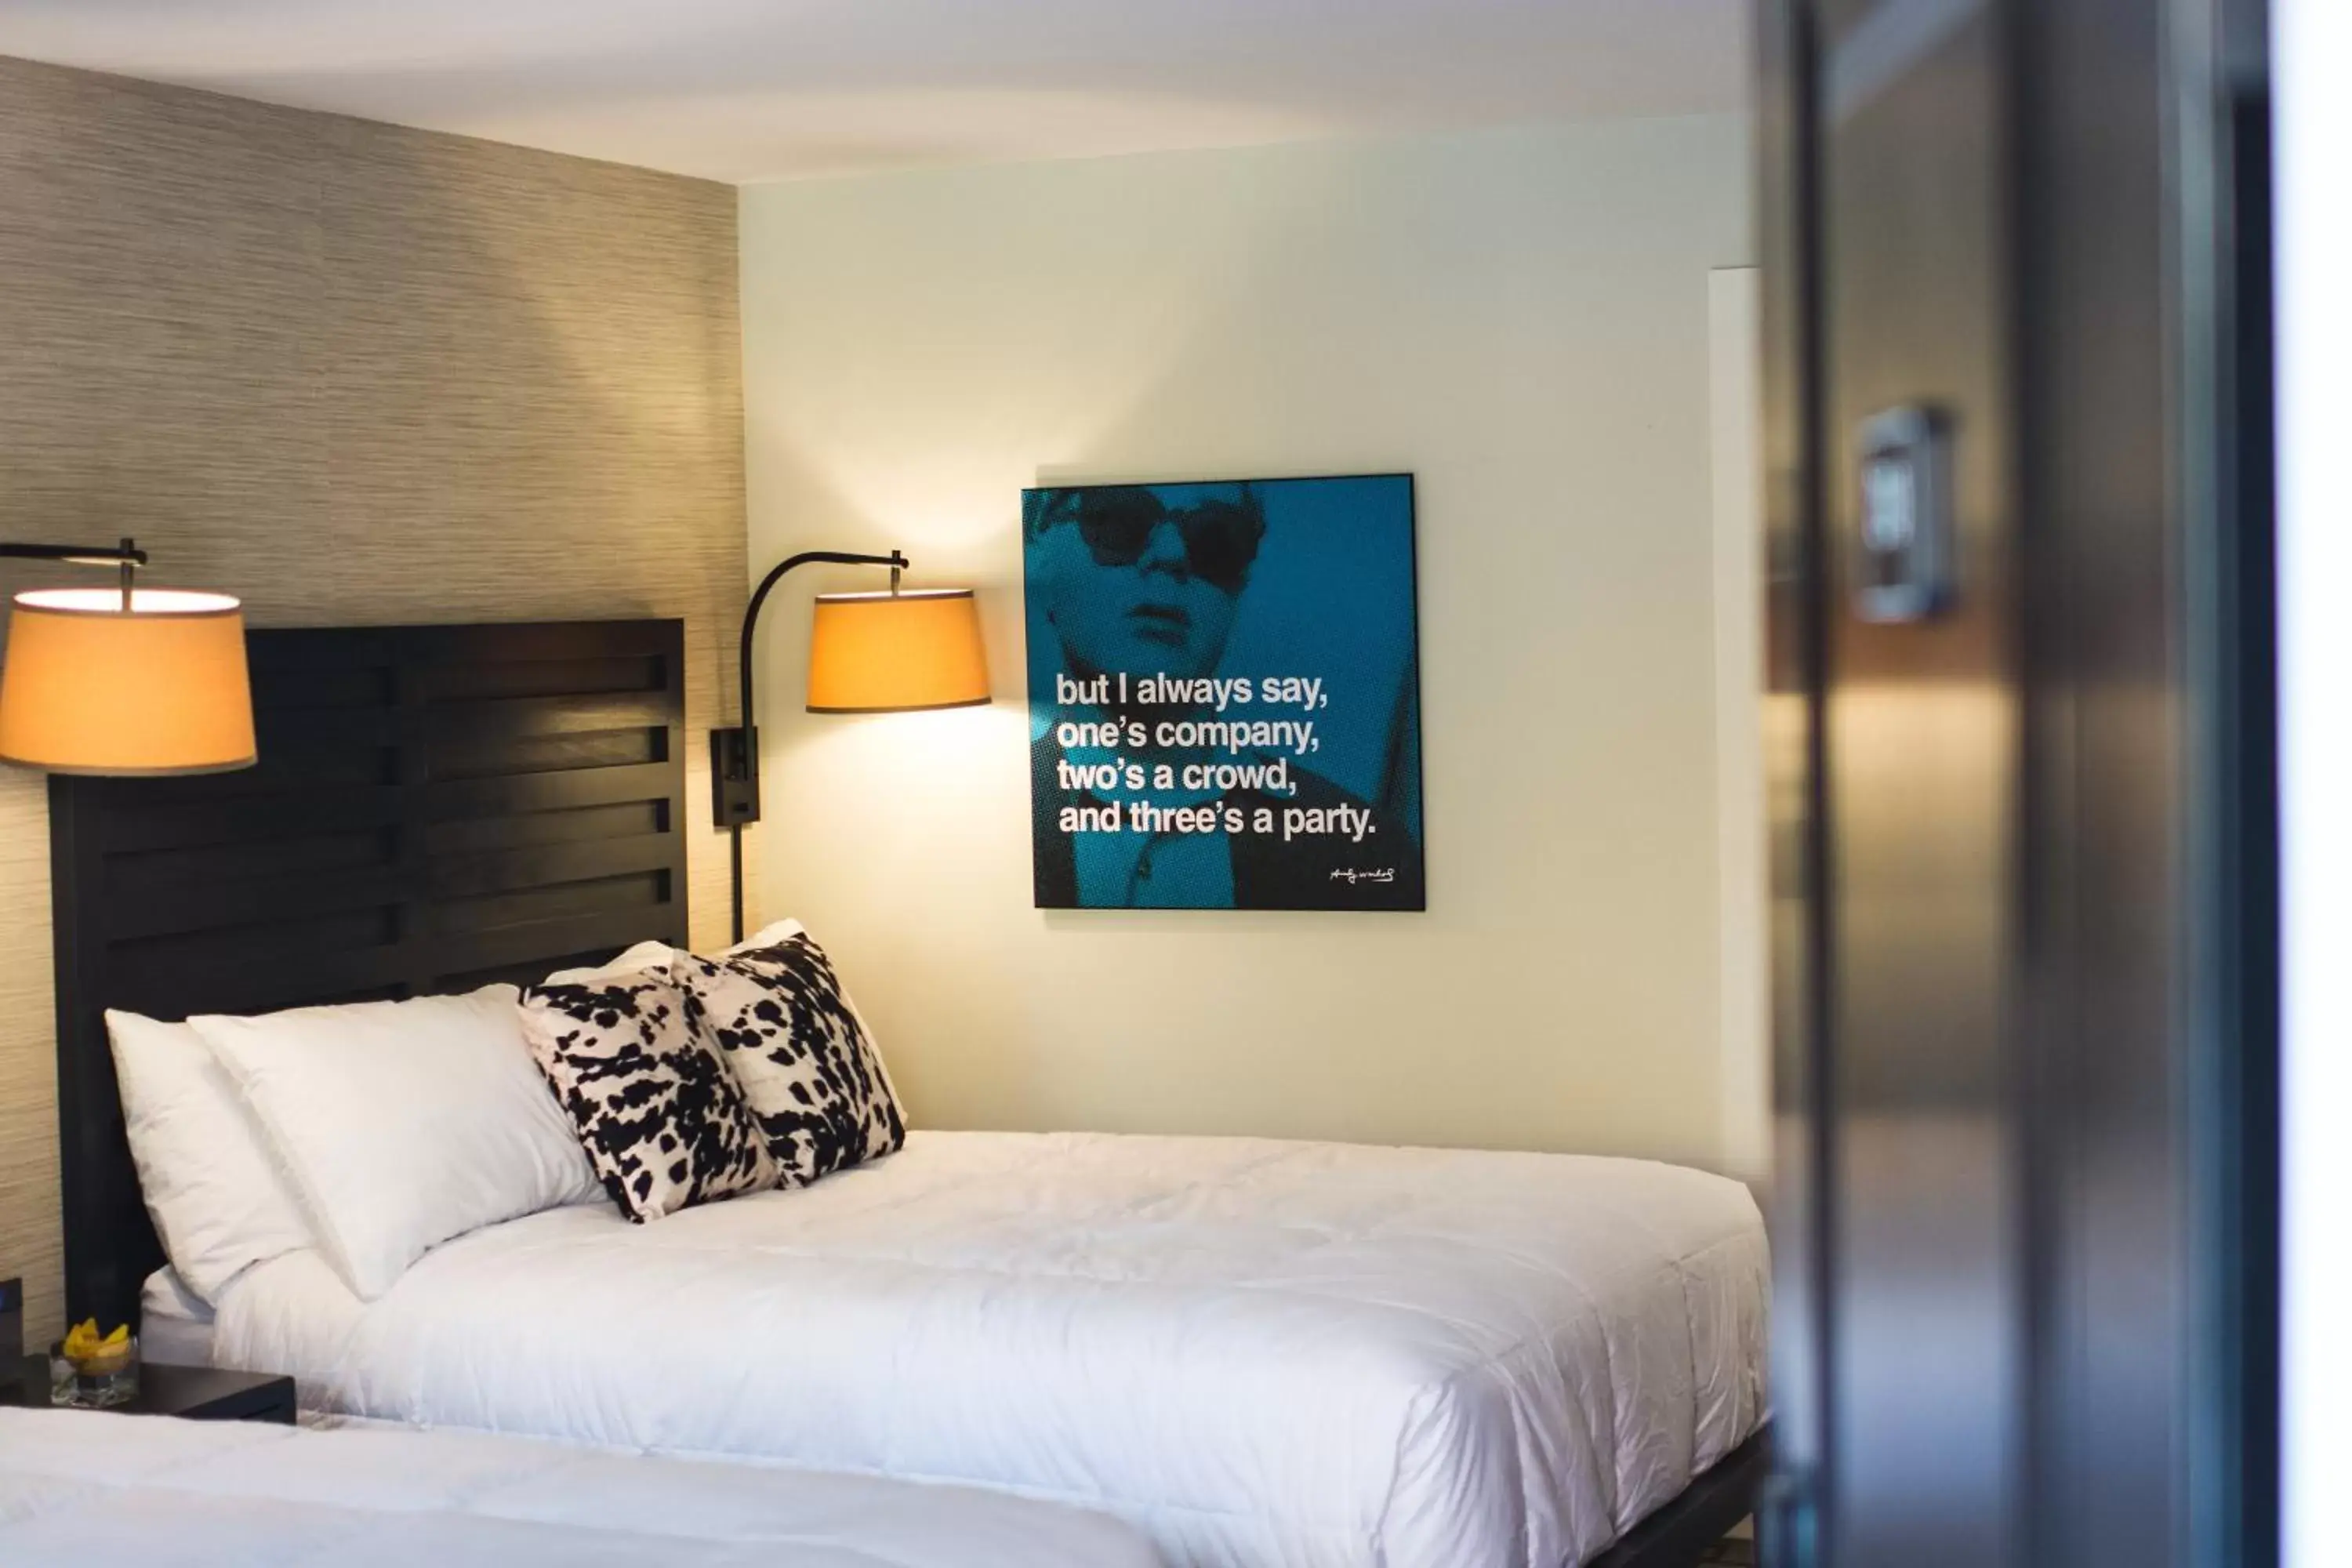 Bed in Hi-Ho: A Hi-Tech Hotel